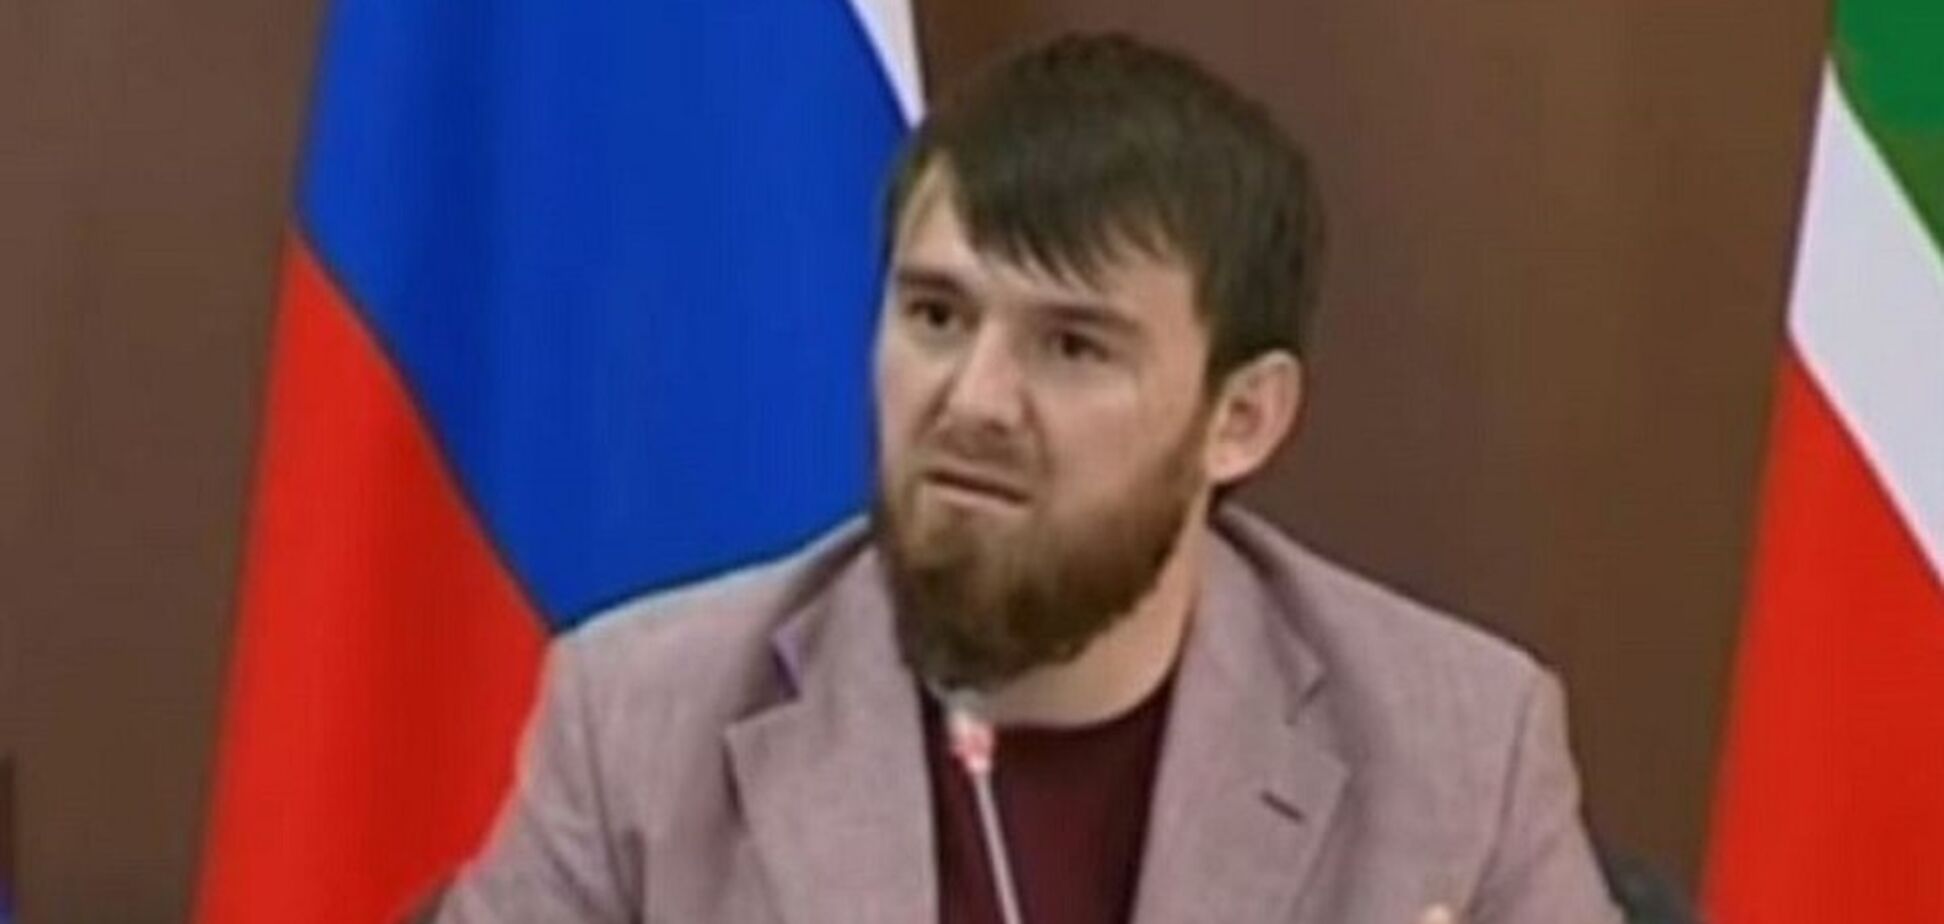 Бил женщину электрошокером: в Чечне начали расследование против племянника Кадырова